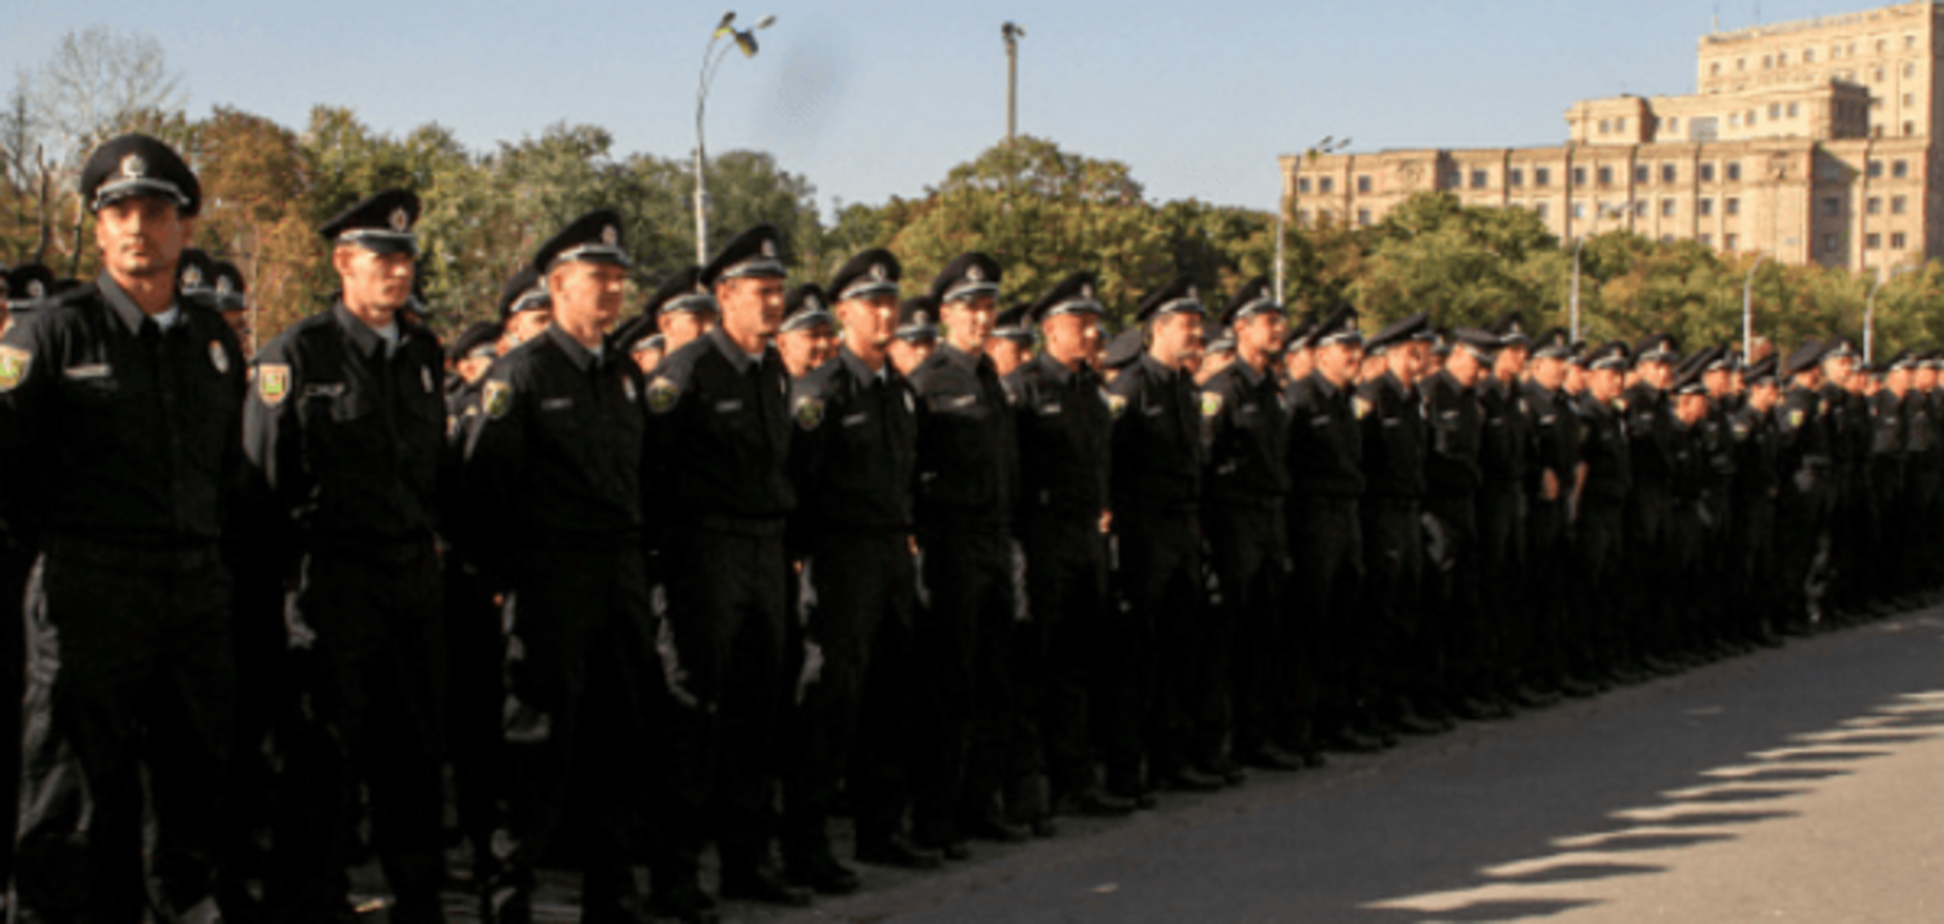 Нацполіція виділила 700 силовиків для охорони Генконсульства Росії у Харкові